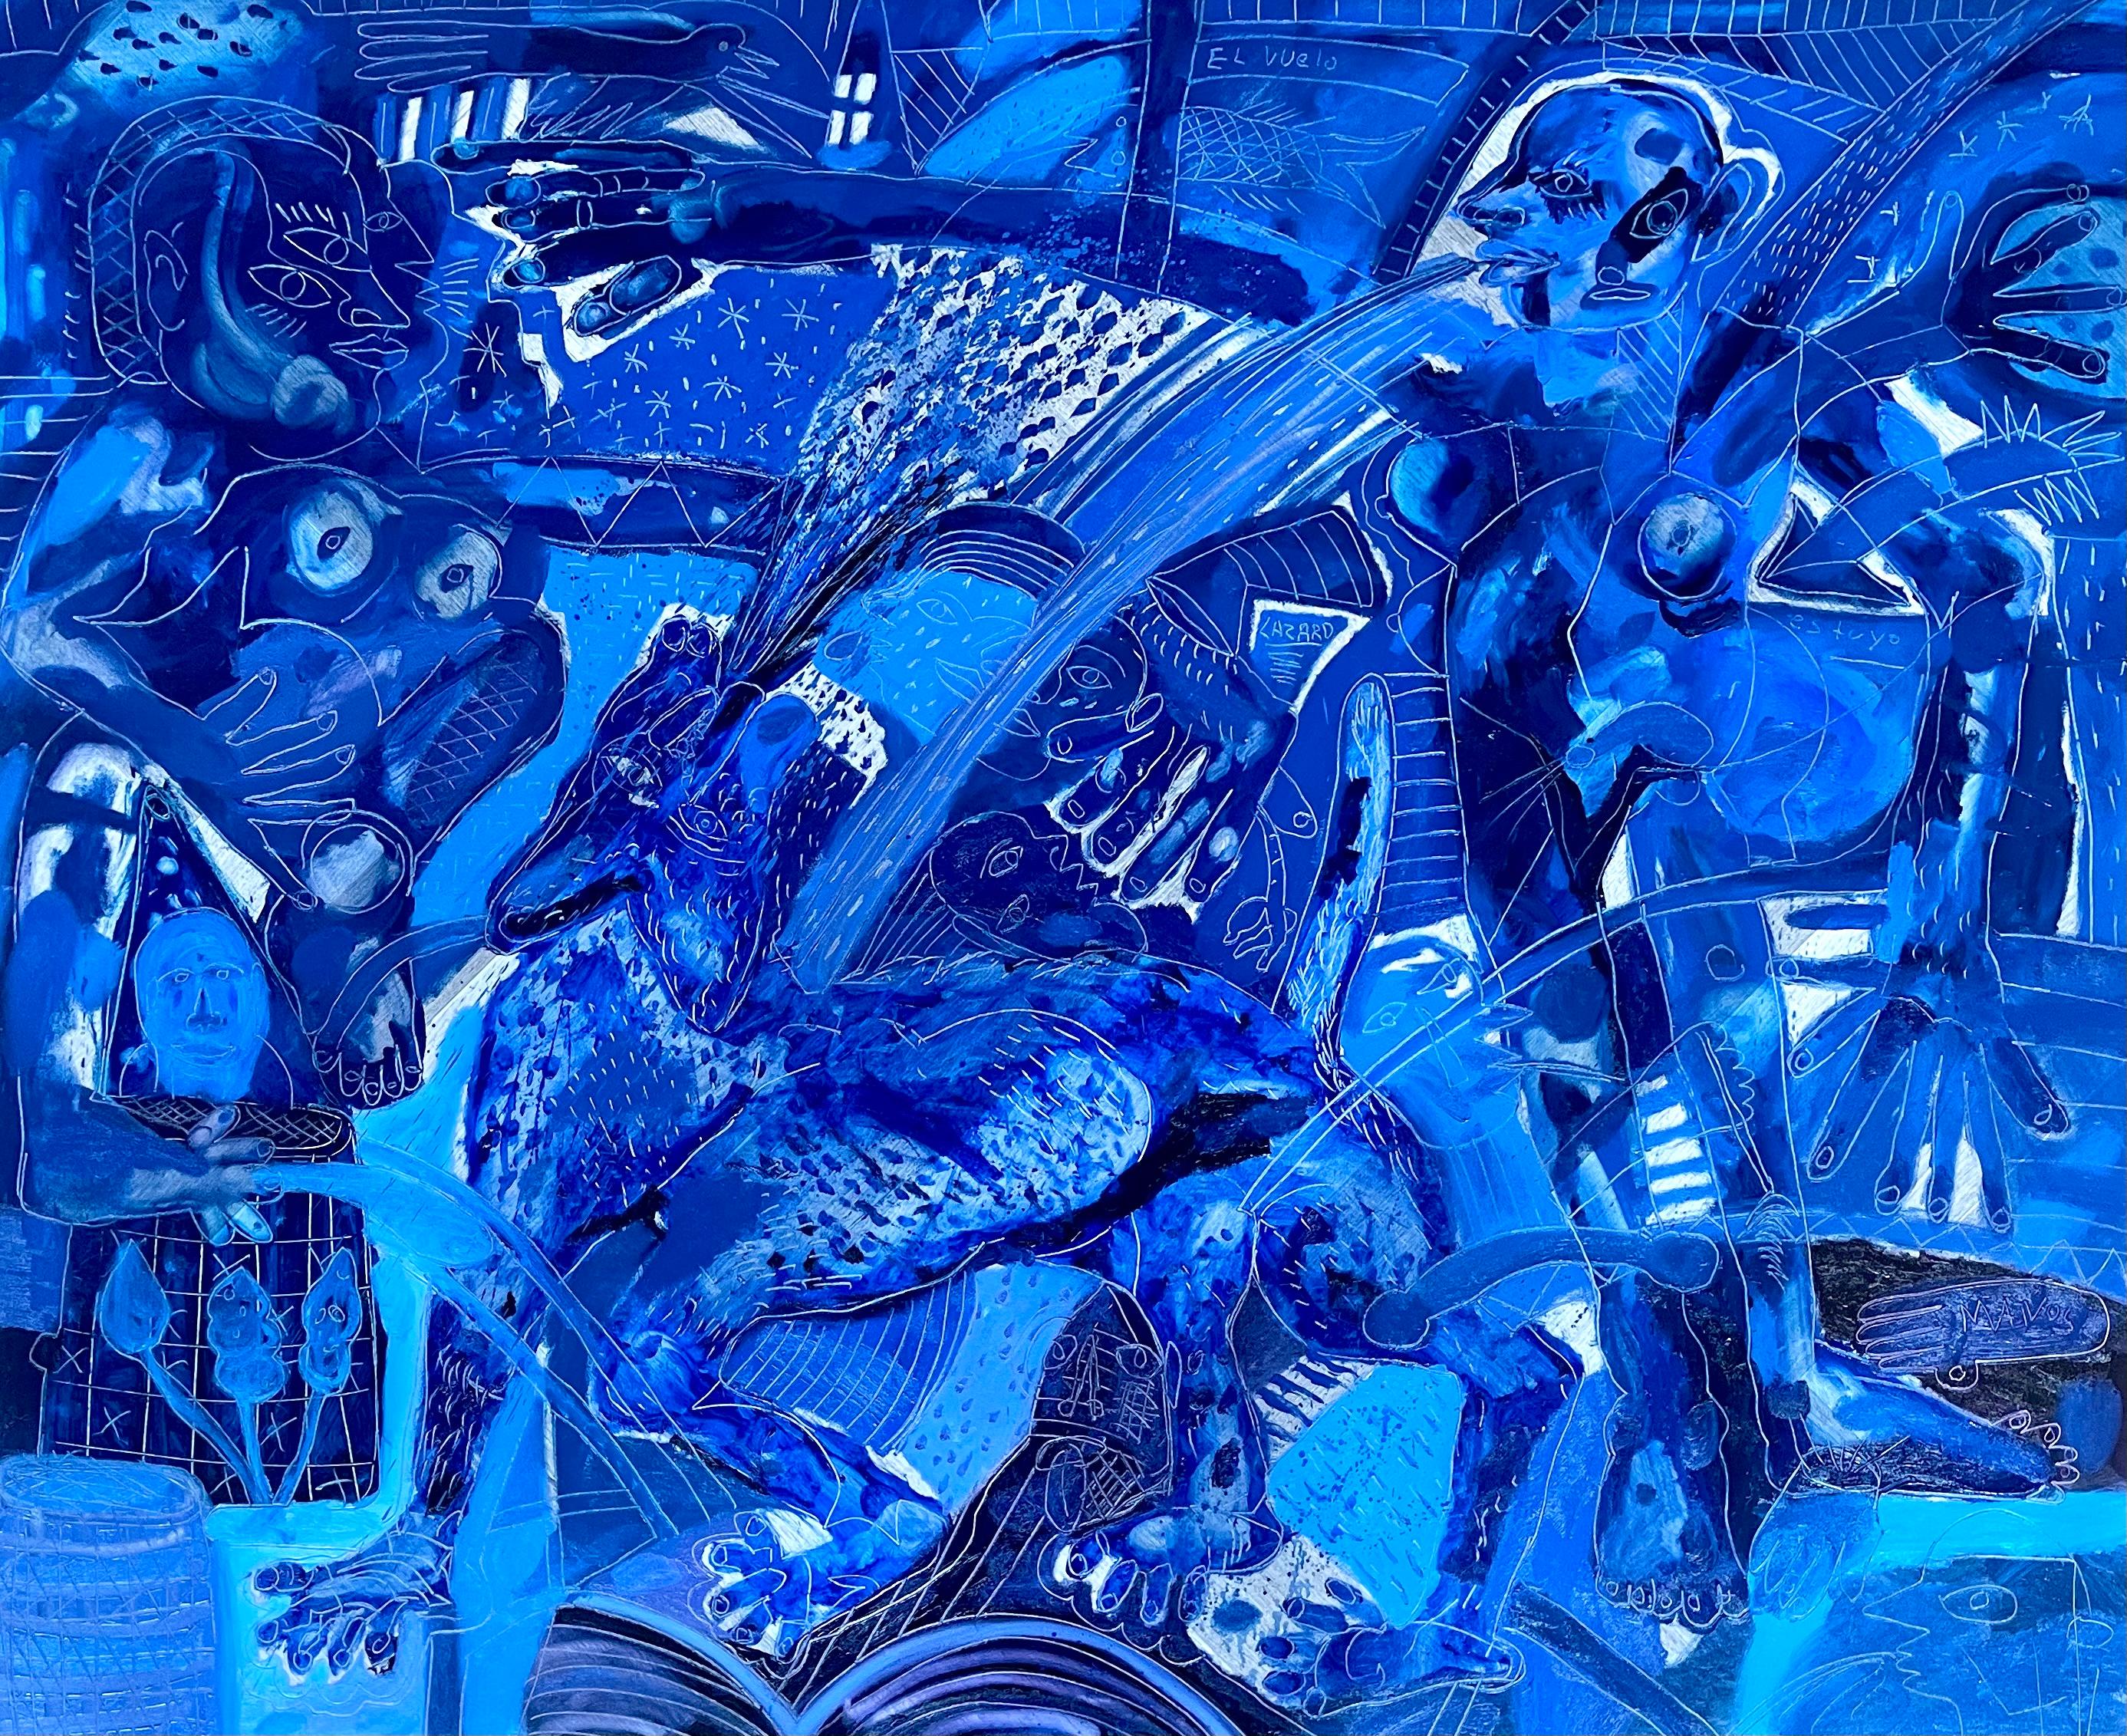 Alex Lazard Abstract Painting – El Vuelo es Tuyo, Zeitgenössische Kunst, Abstrakte Malerei, 21. Jahrhundert